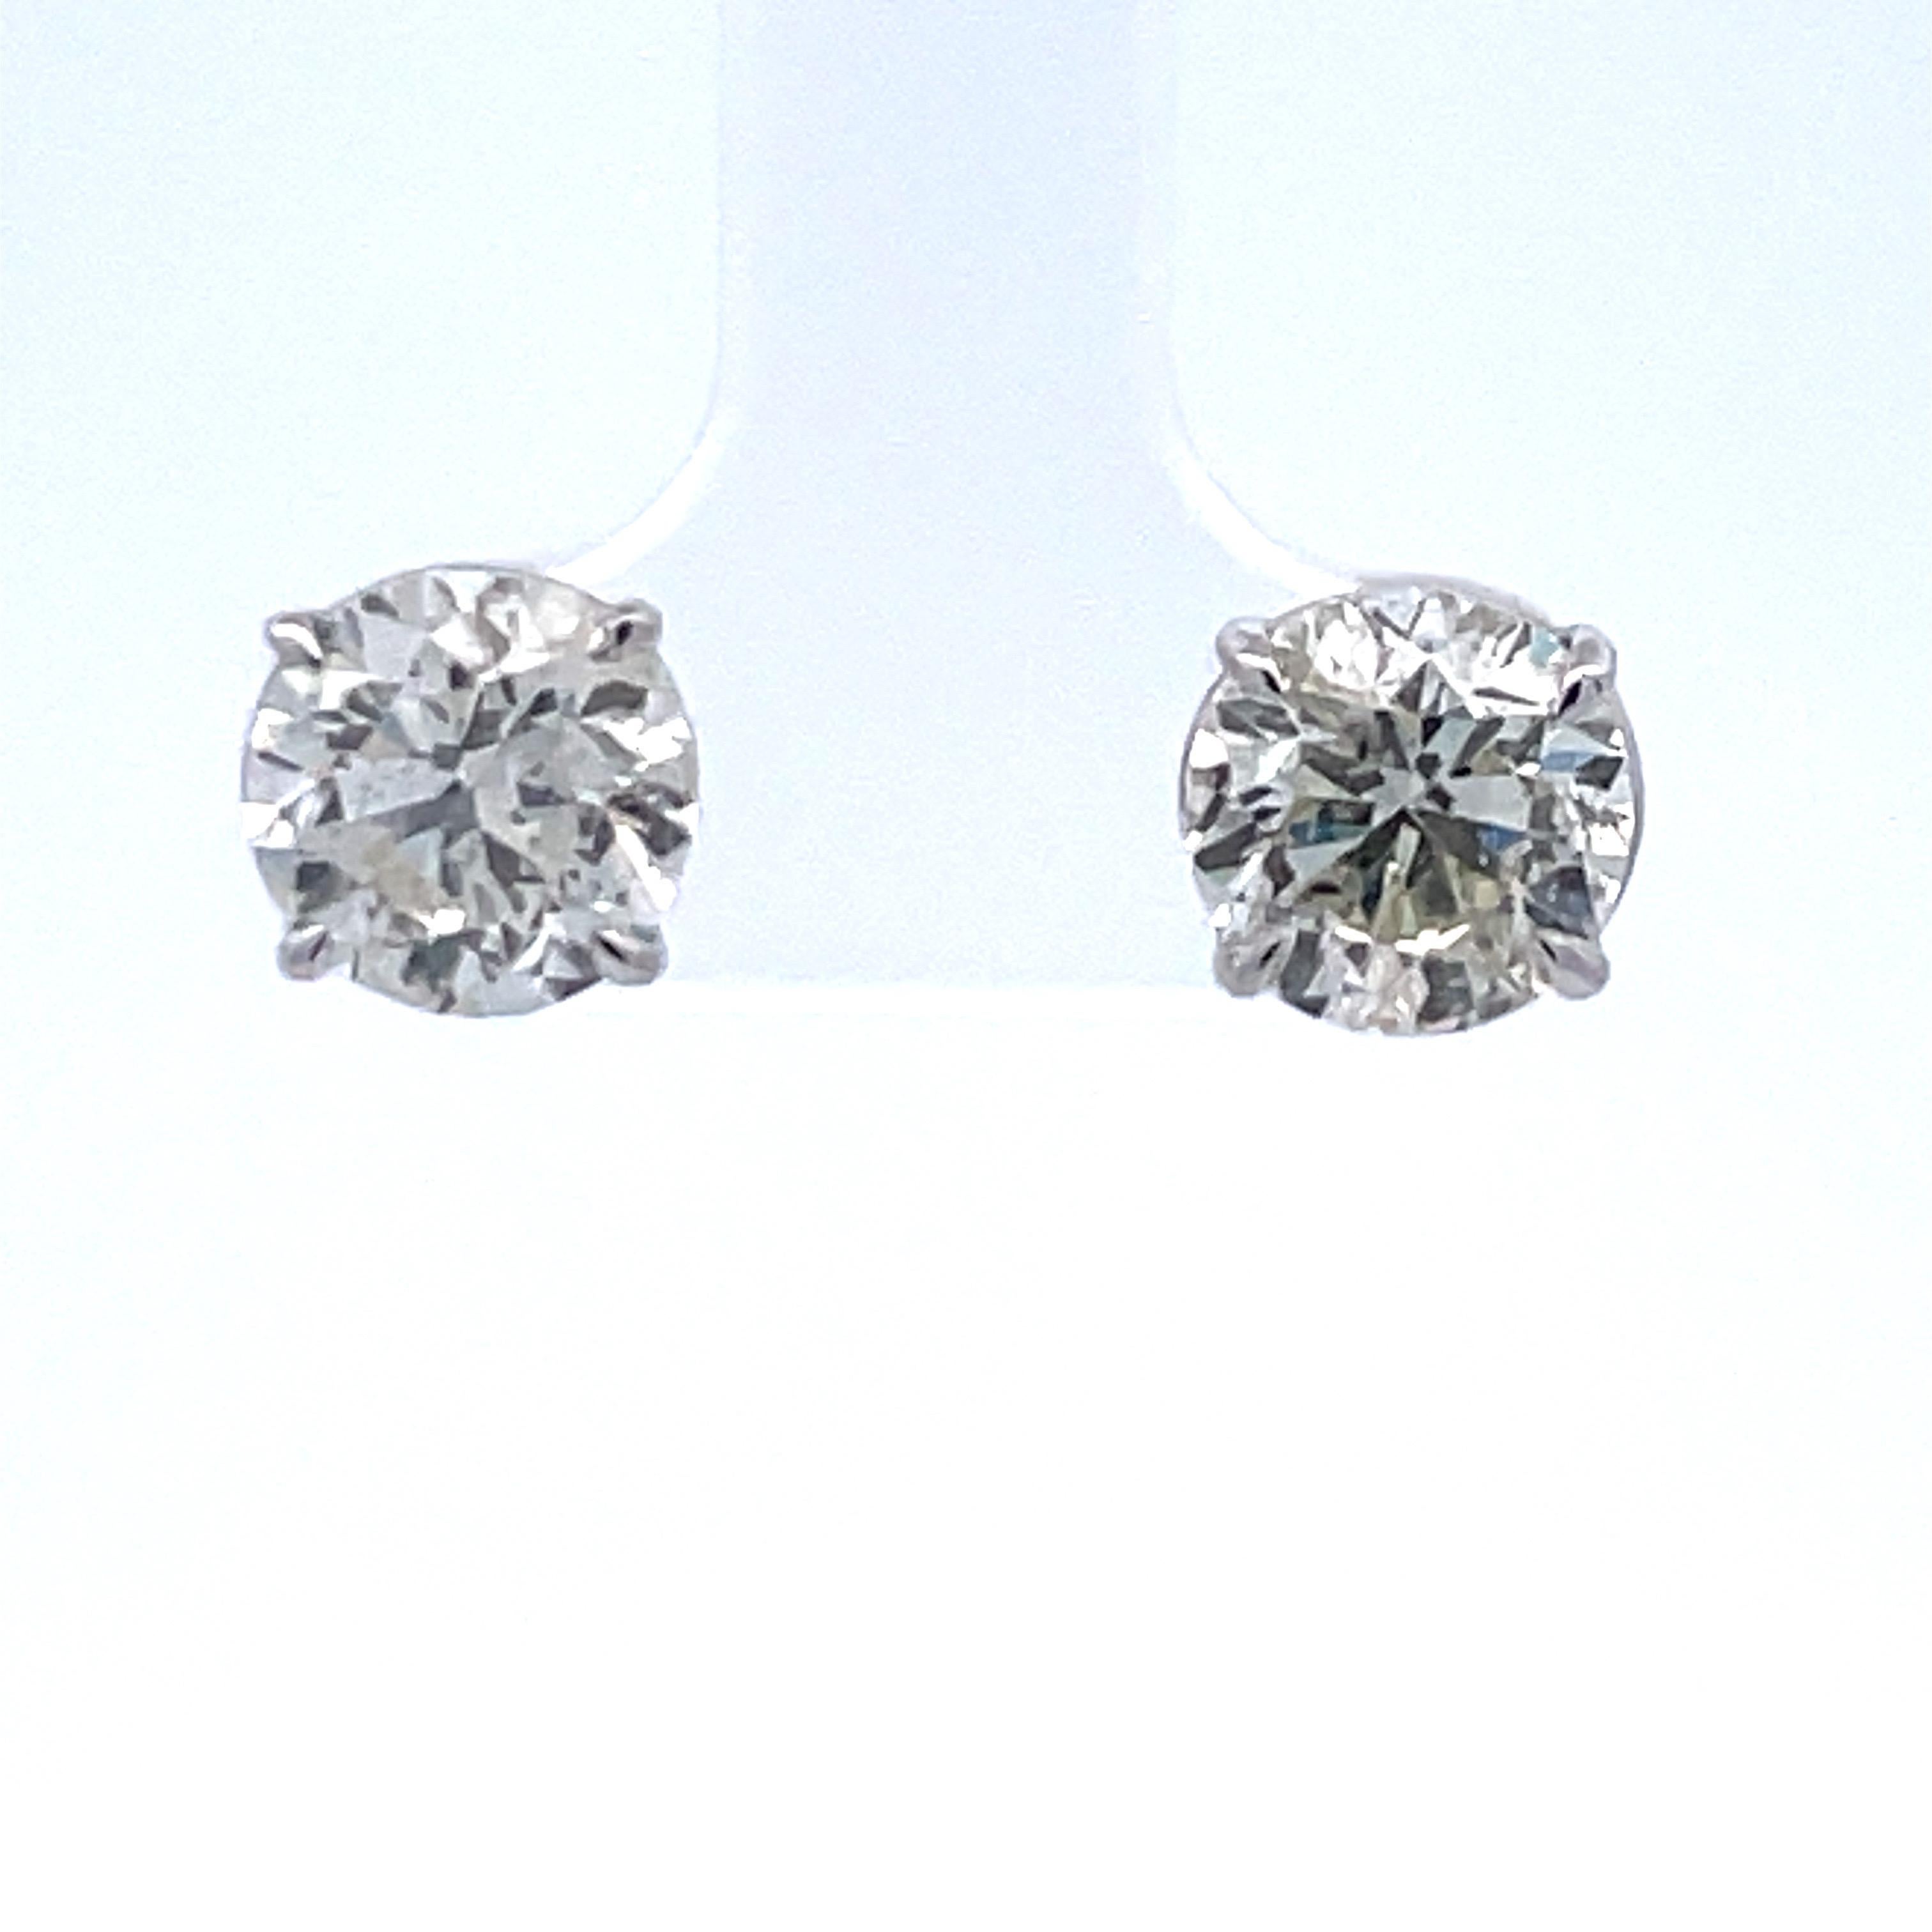 1.5 carat diamond earrings on ear